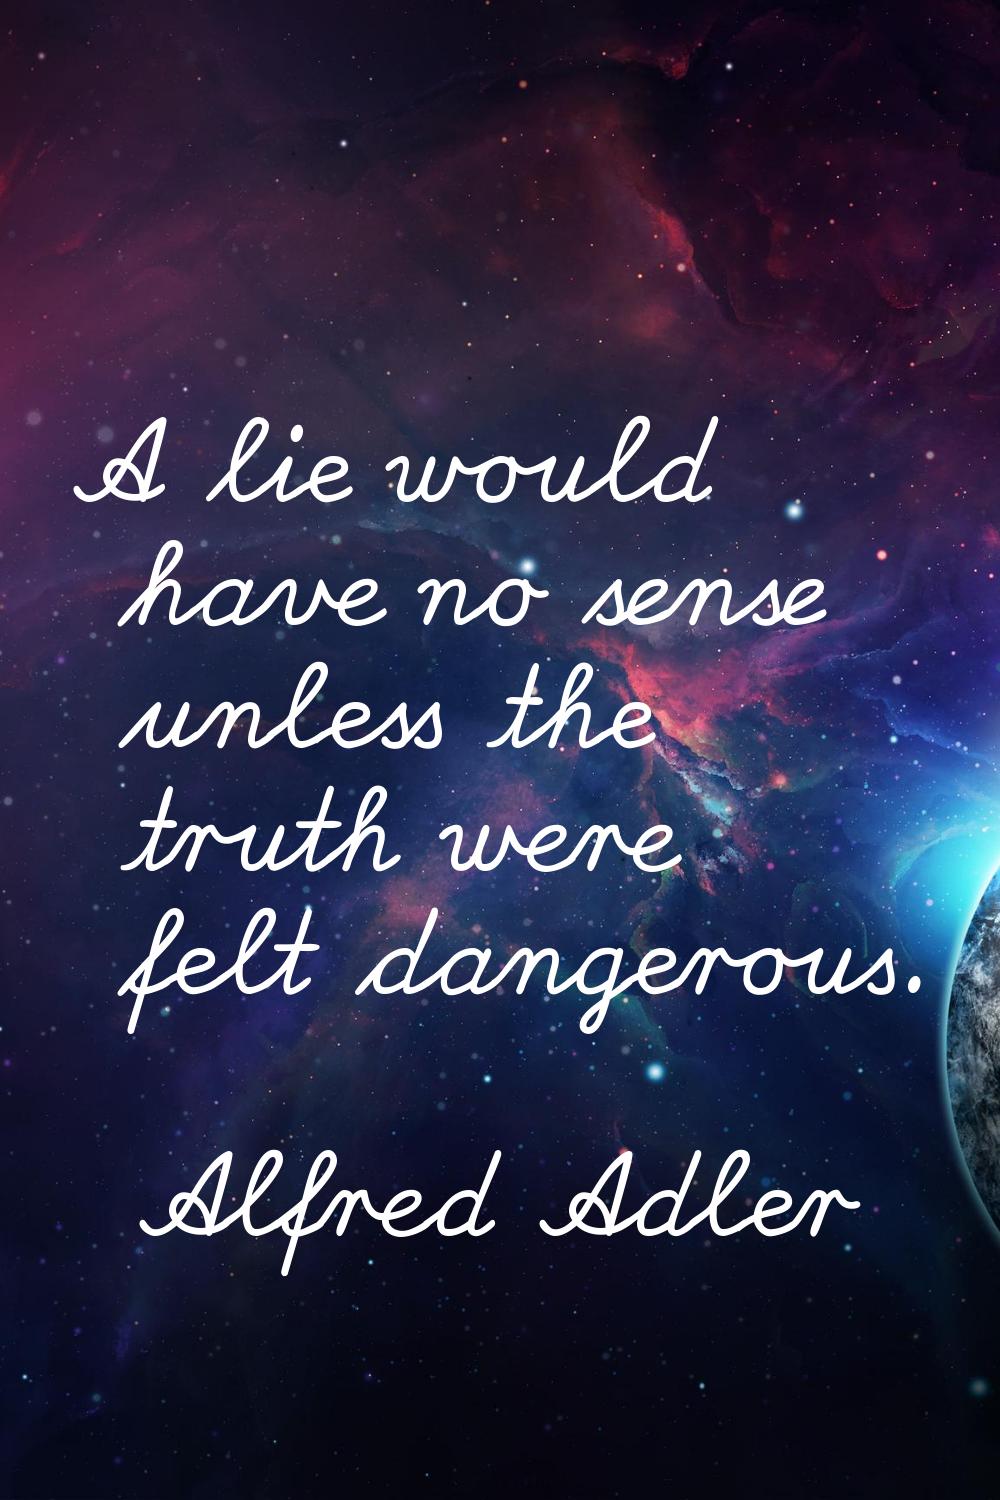 A lie would have no sense unless the truth were felt dangerous.